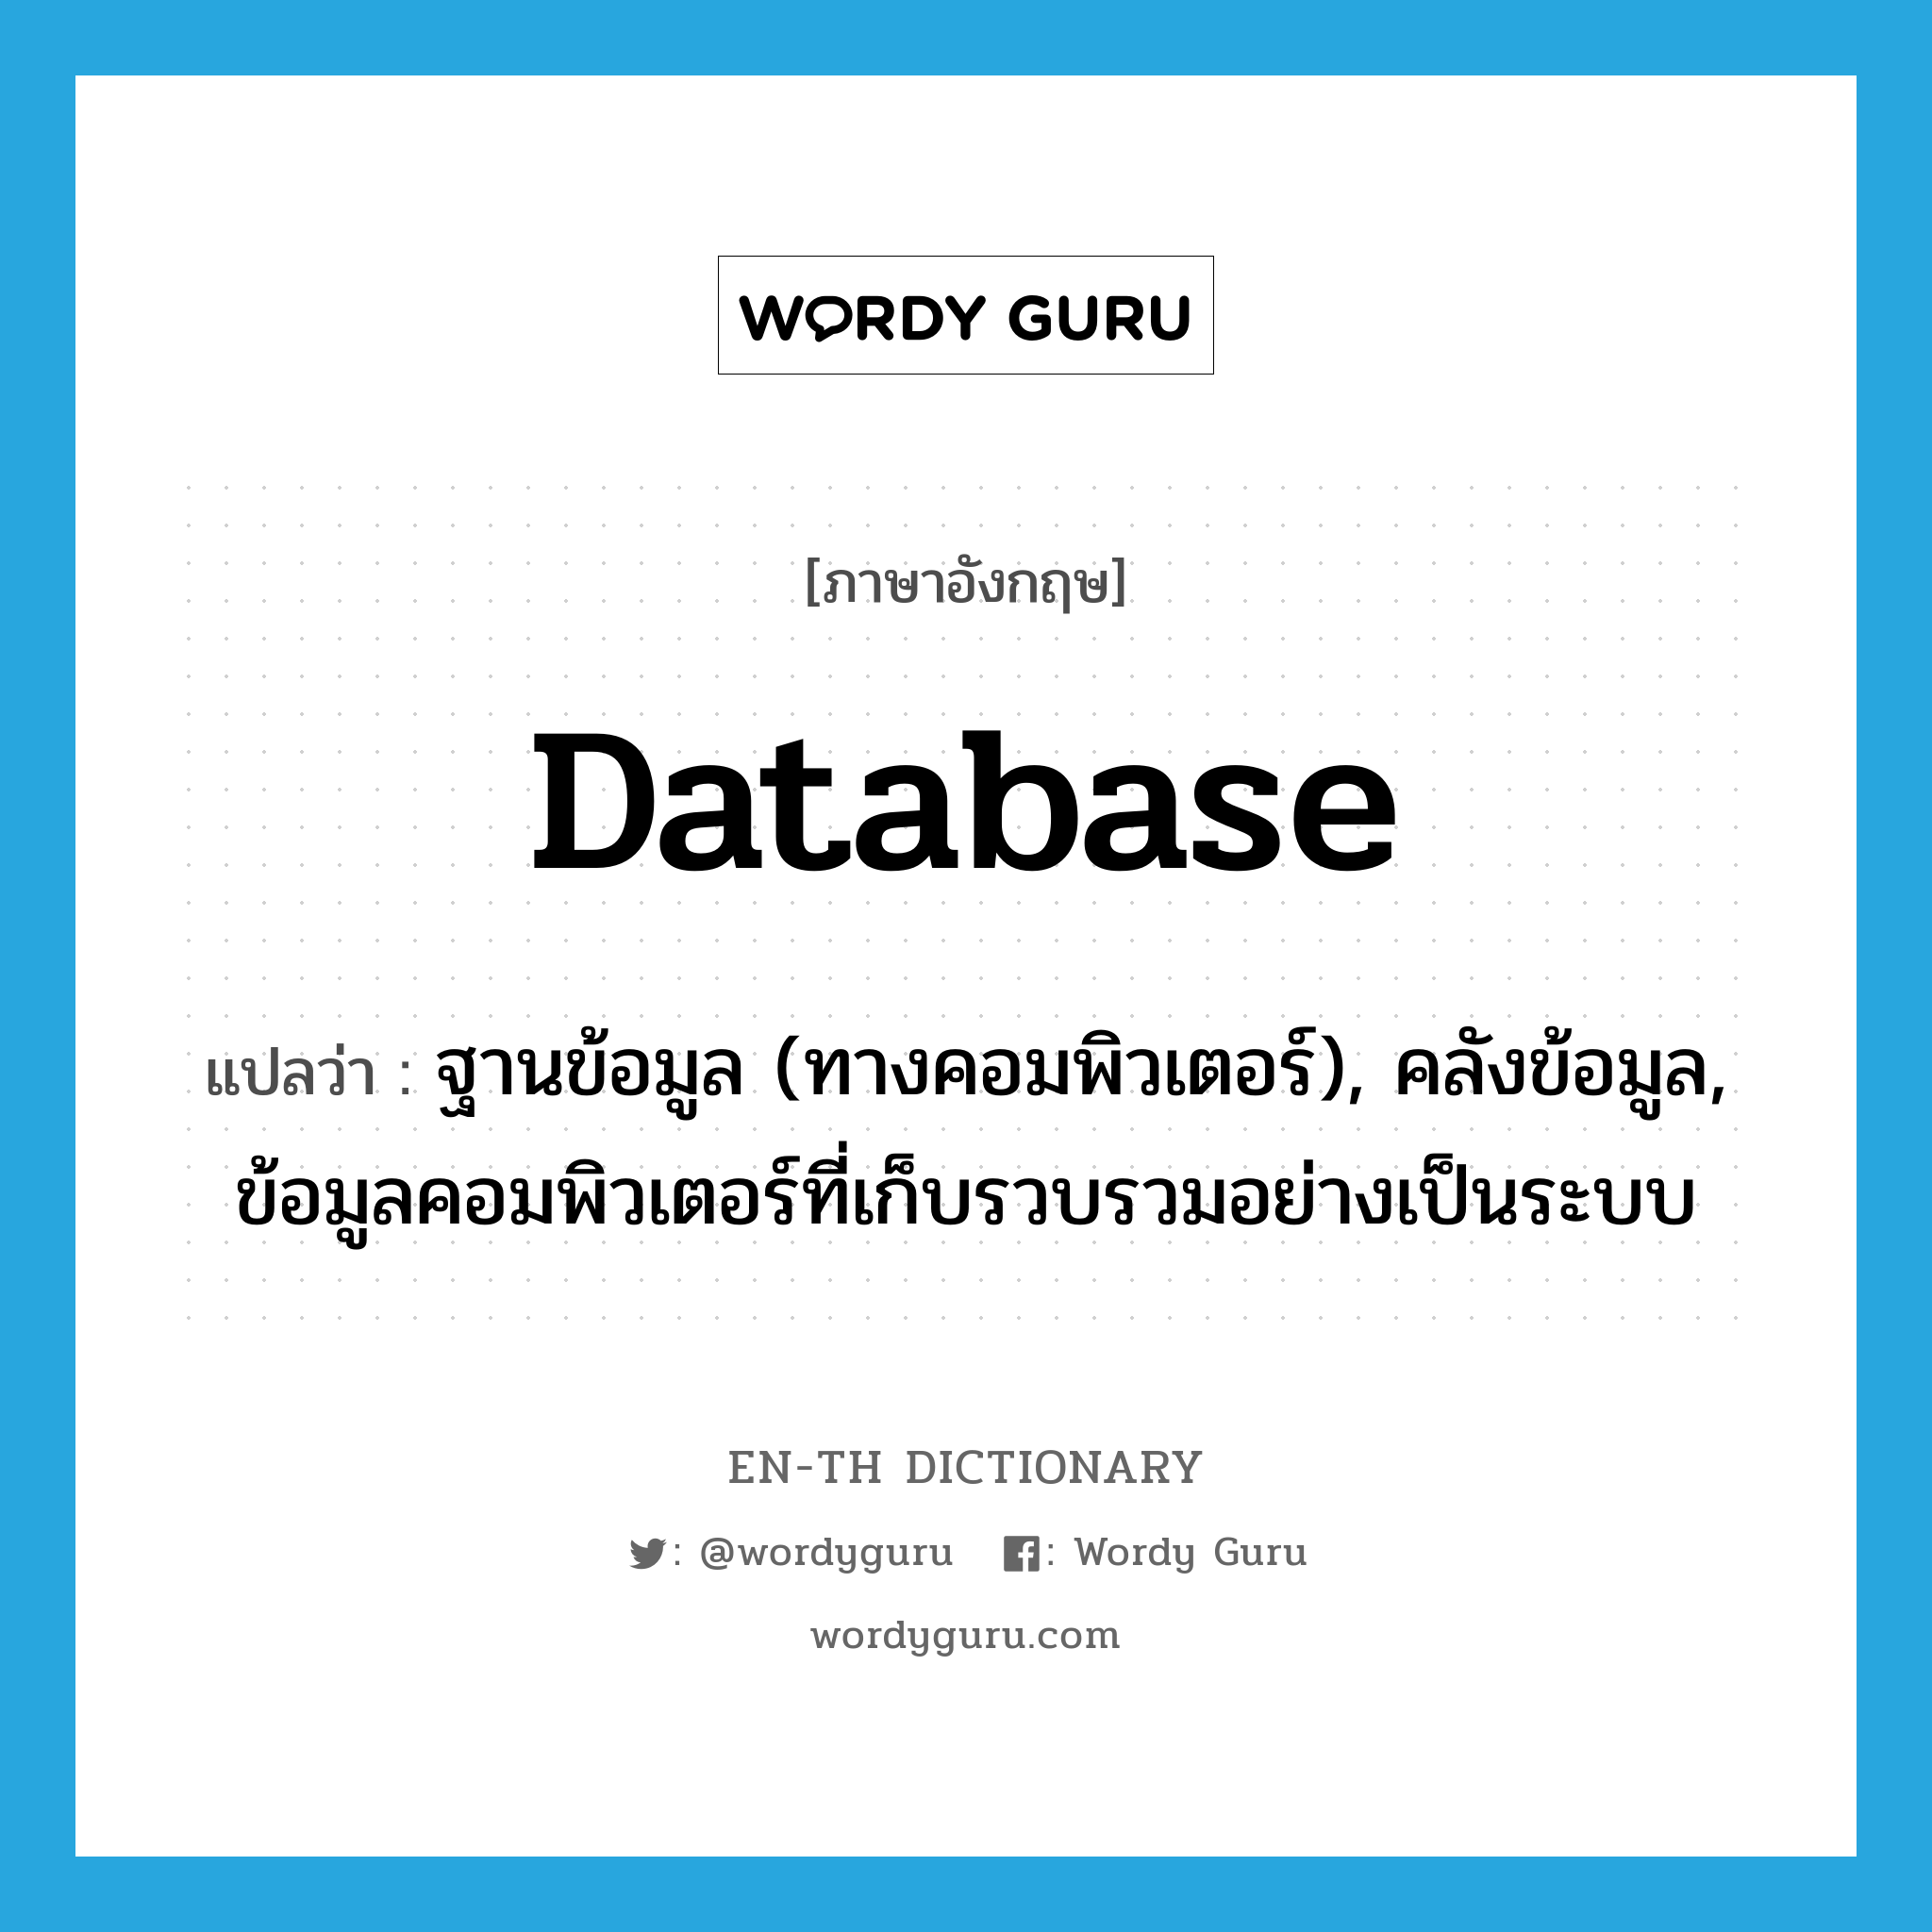 database แปลว่า?, คำศัพท์ภาษาอังกฤษ database แปลว่า ฐานข้อมูล (ทางคอมพิวเตอร์), คลังข้อมูล, ข้อมูลคอมพิวเตอร์ที่เก็บรวบรวมอย่างเป็นระบบ ประเภท N หมวด N